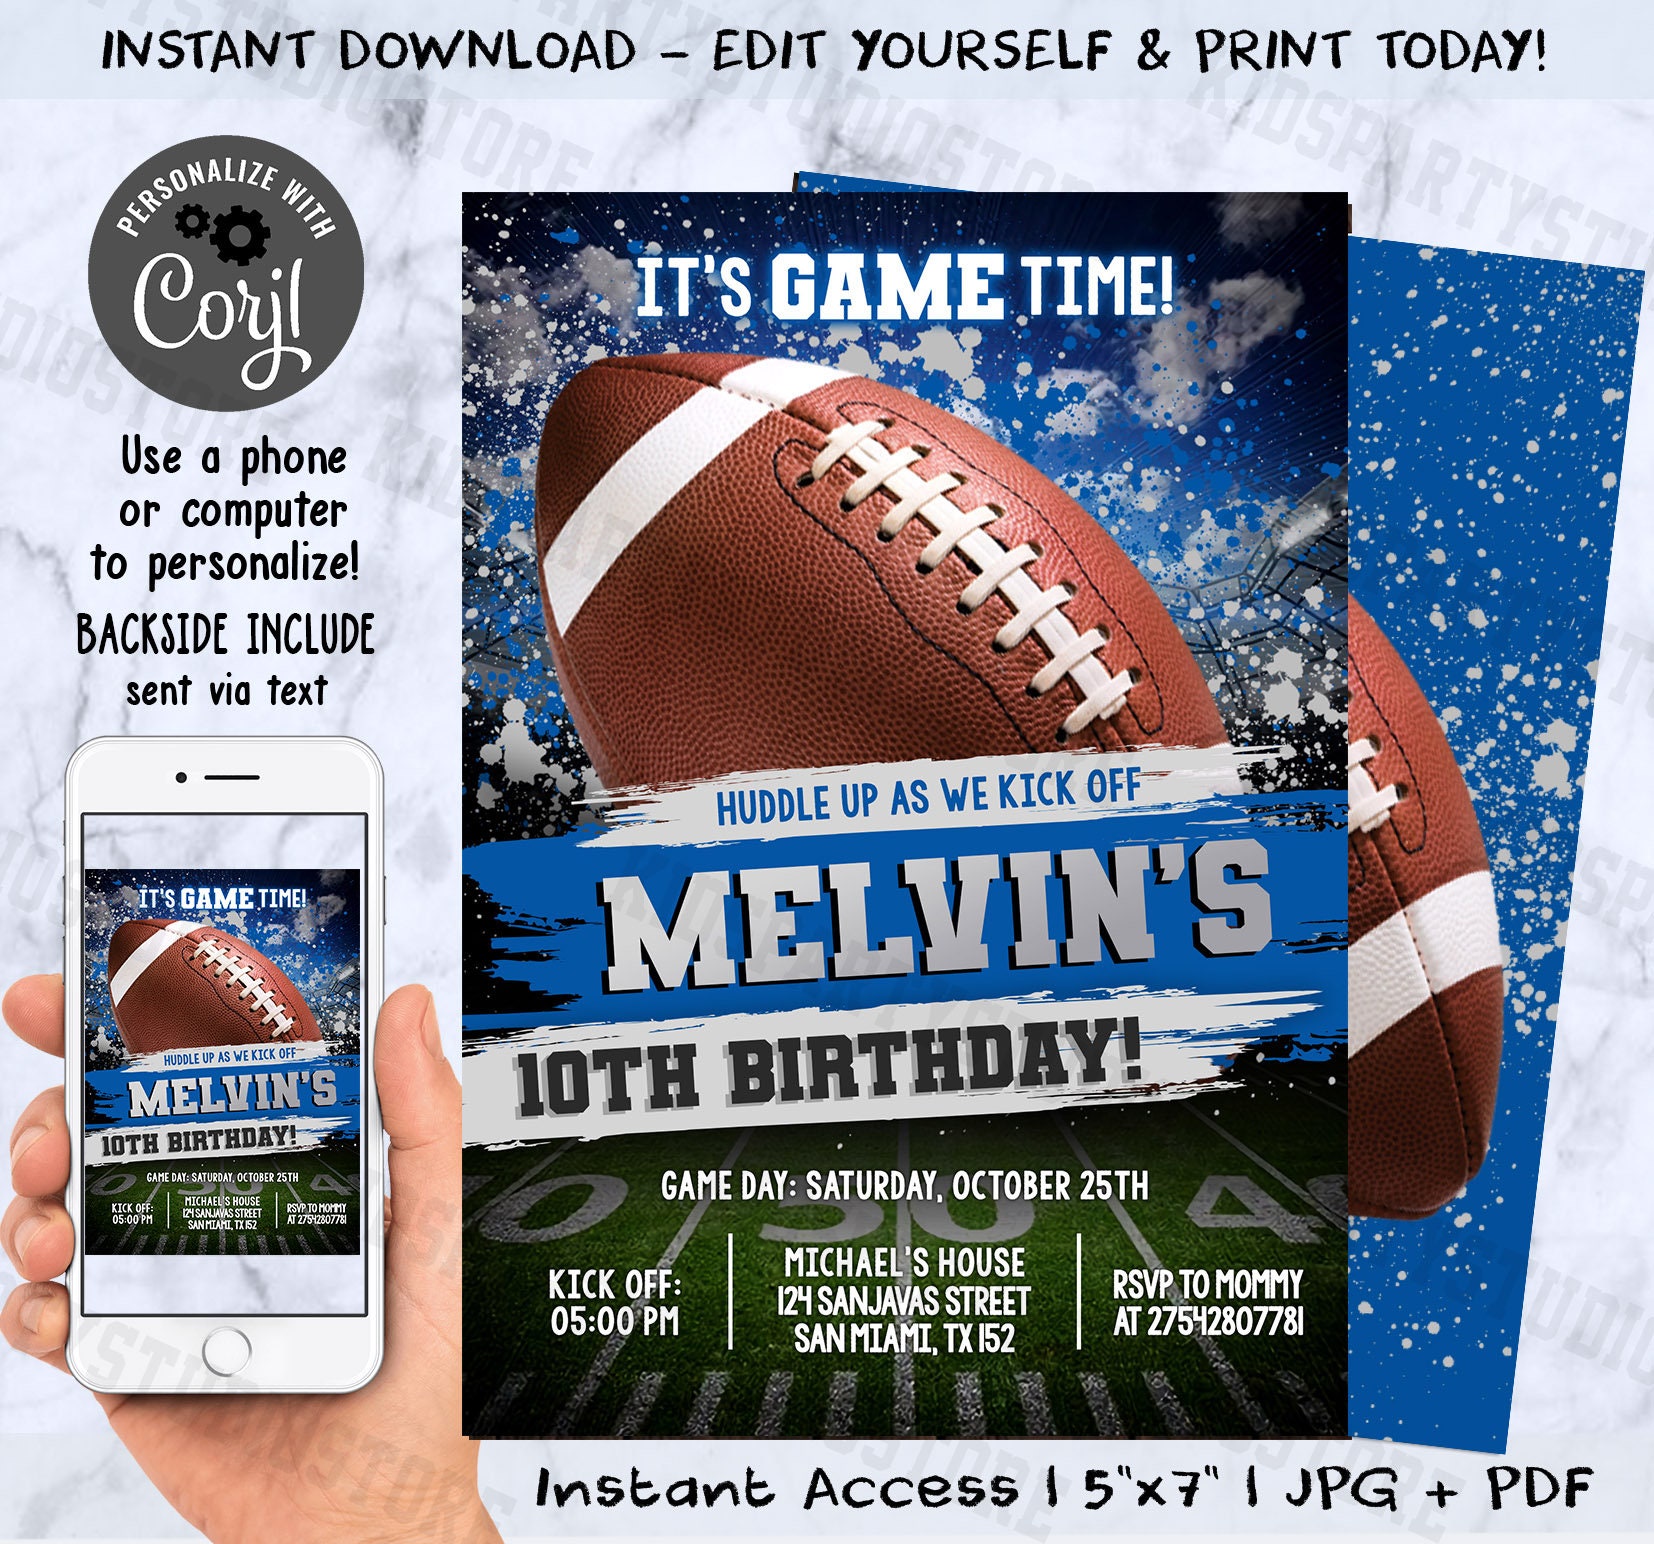 Minnesota Vikings NFL Football Ticket Style Invite